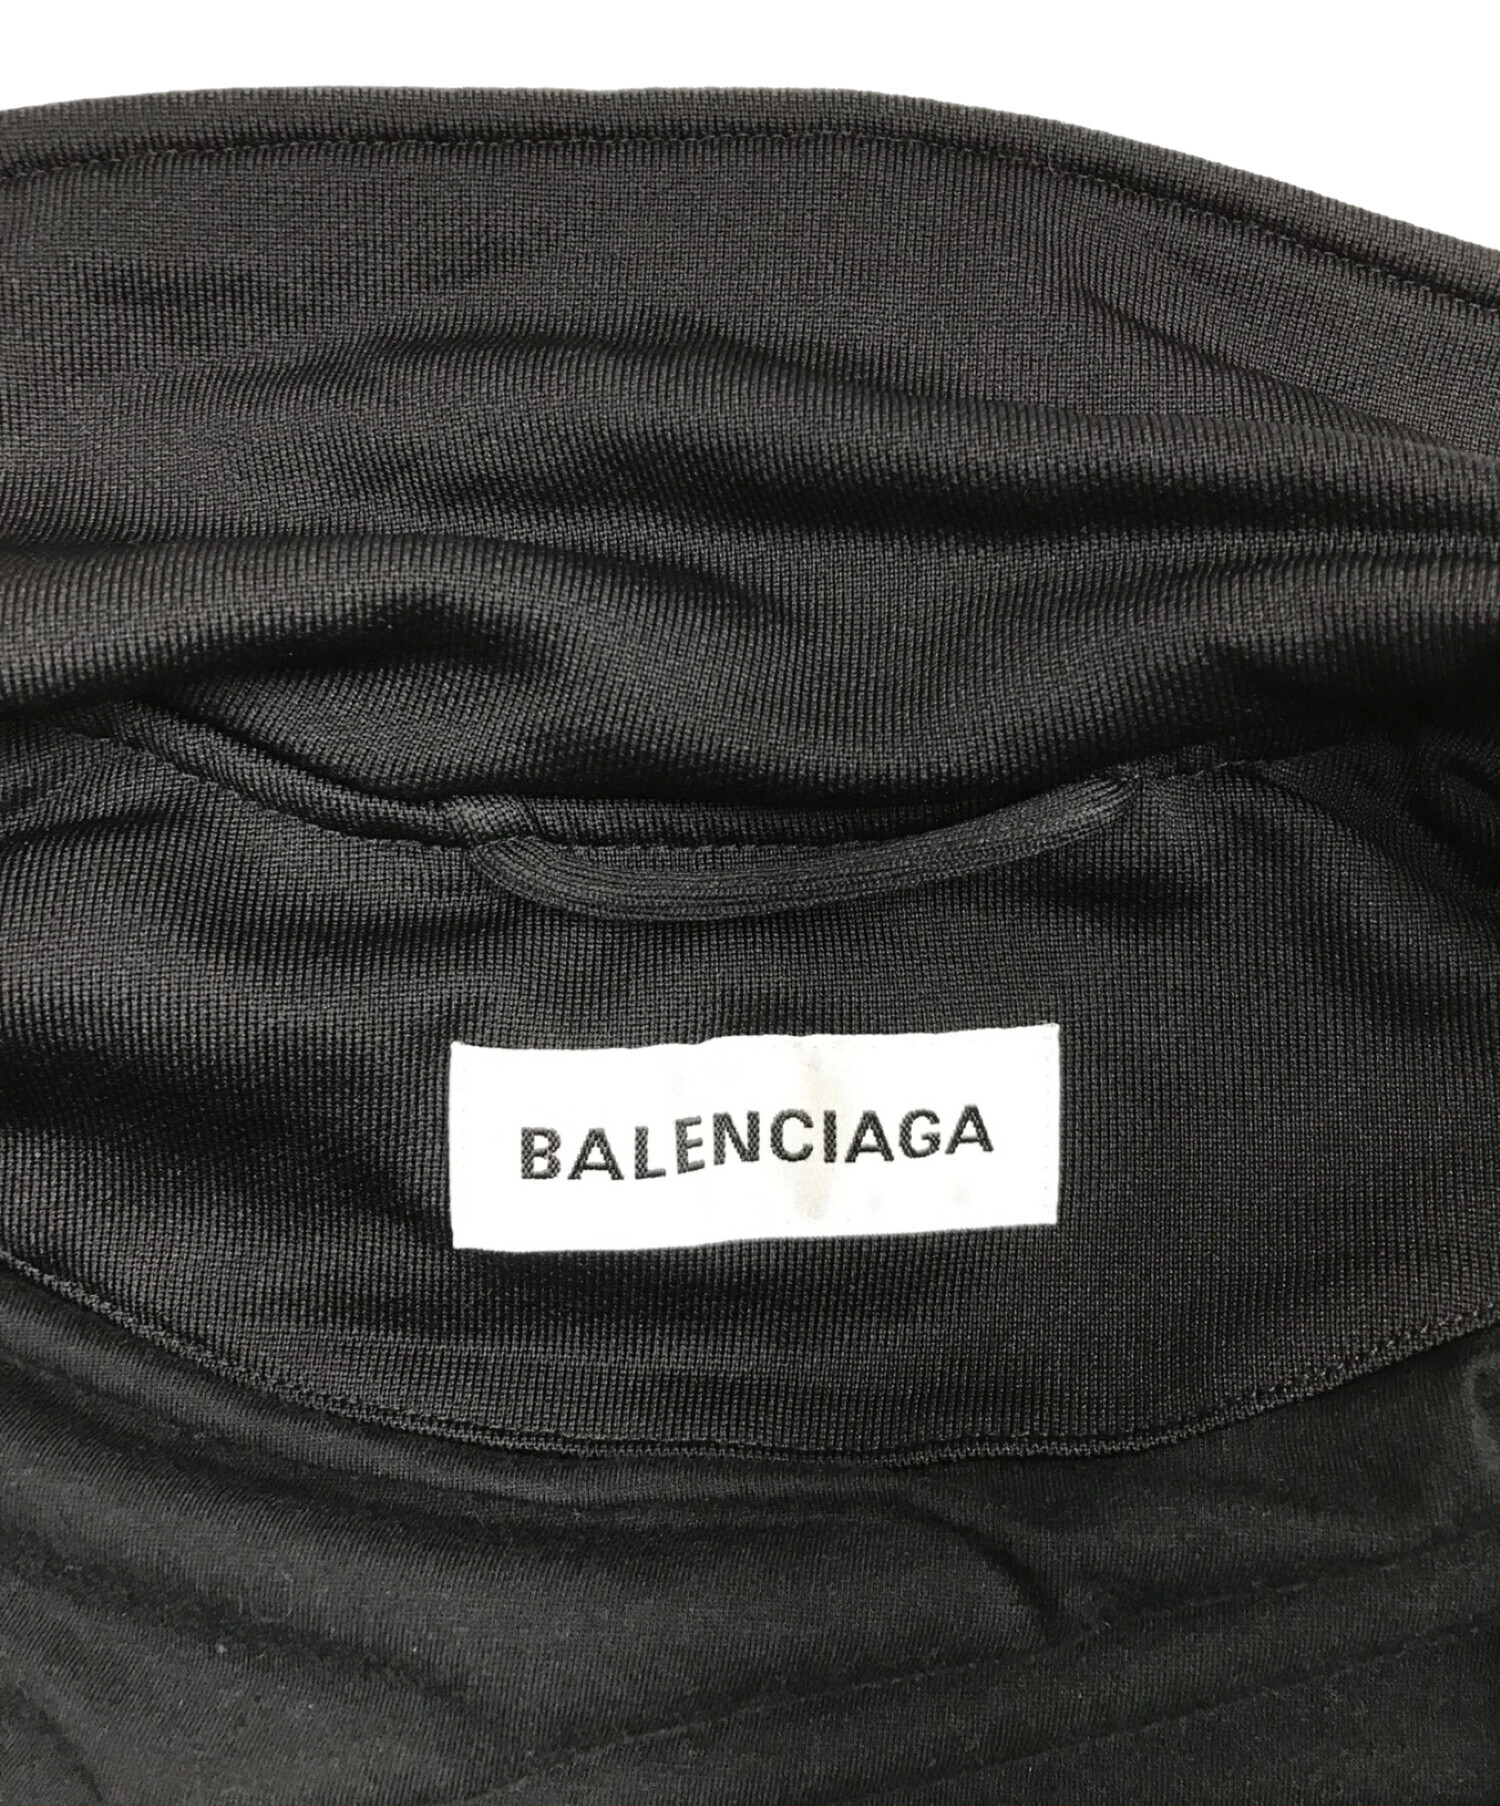 BALENCIAGA (バレンシアガ) トラックジャケット ブラック サイズ:L